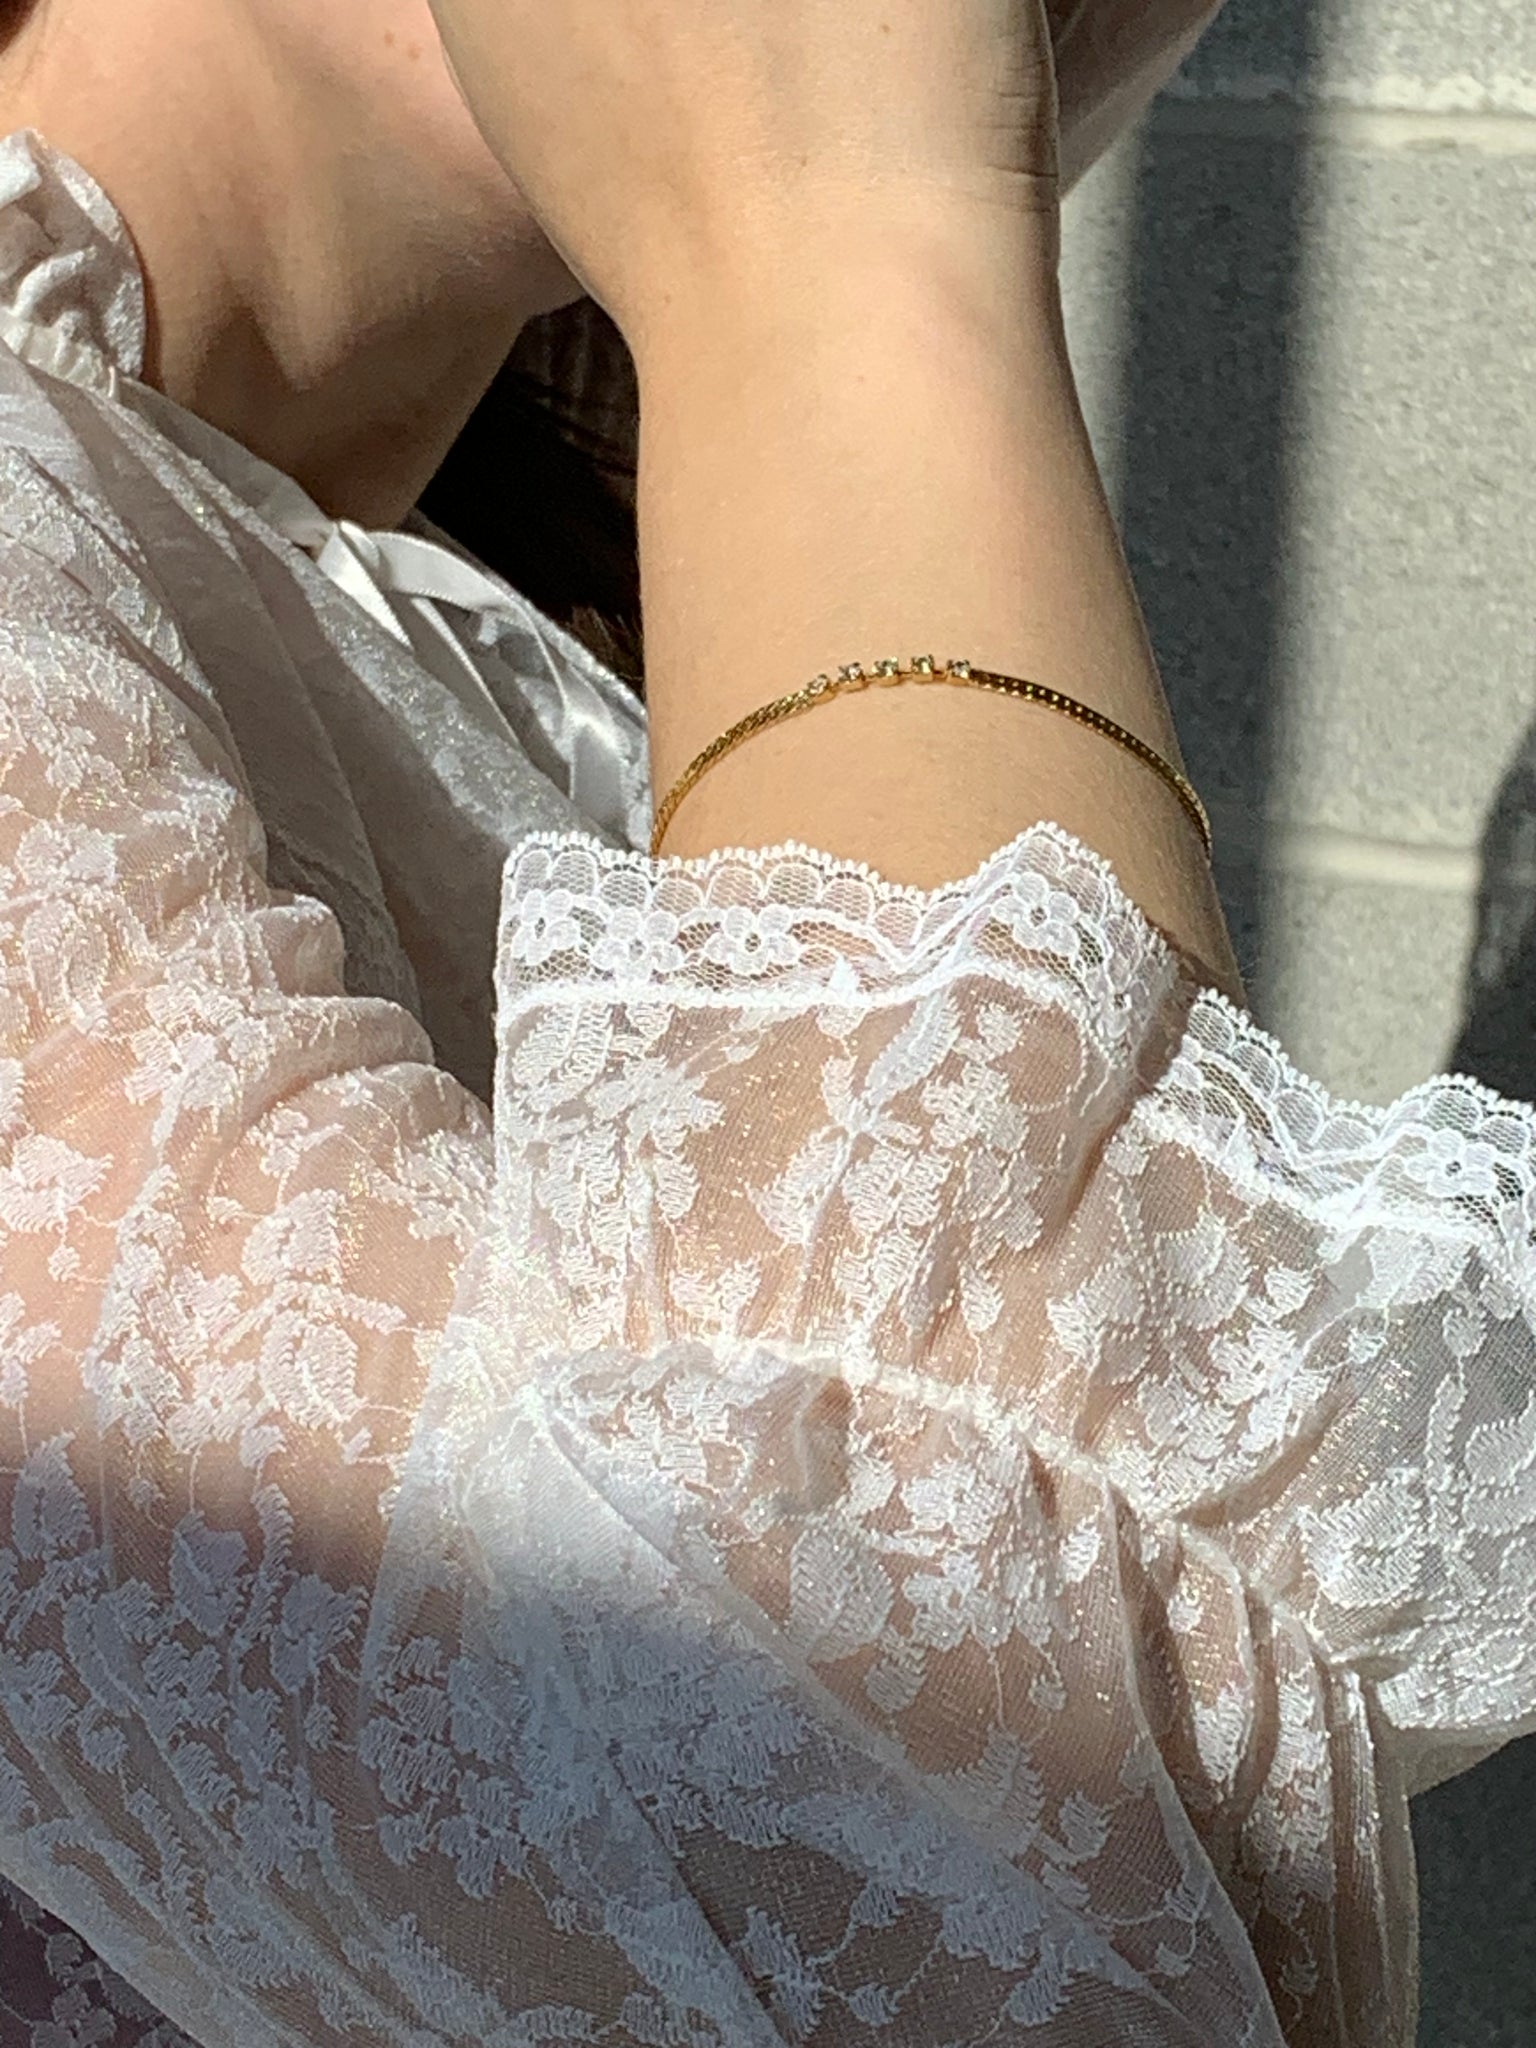 gold snake chain bracelet